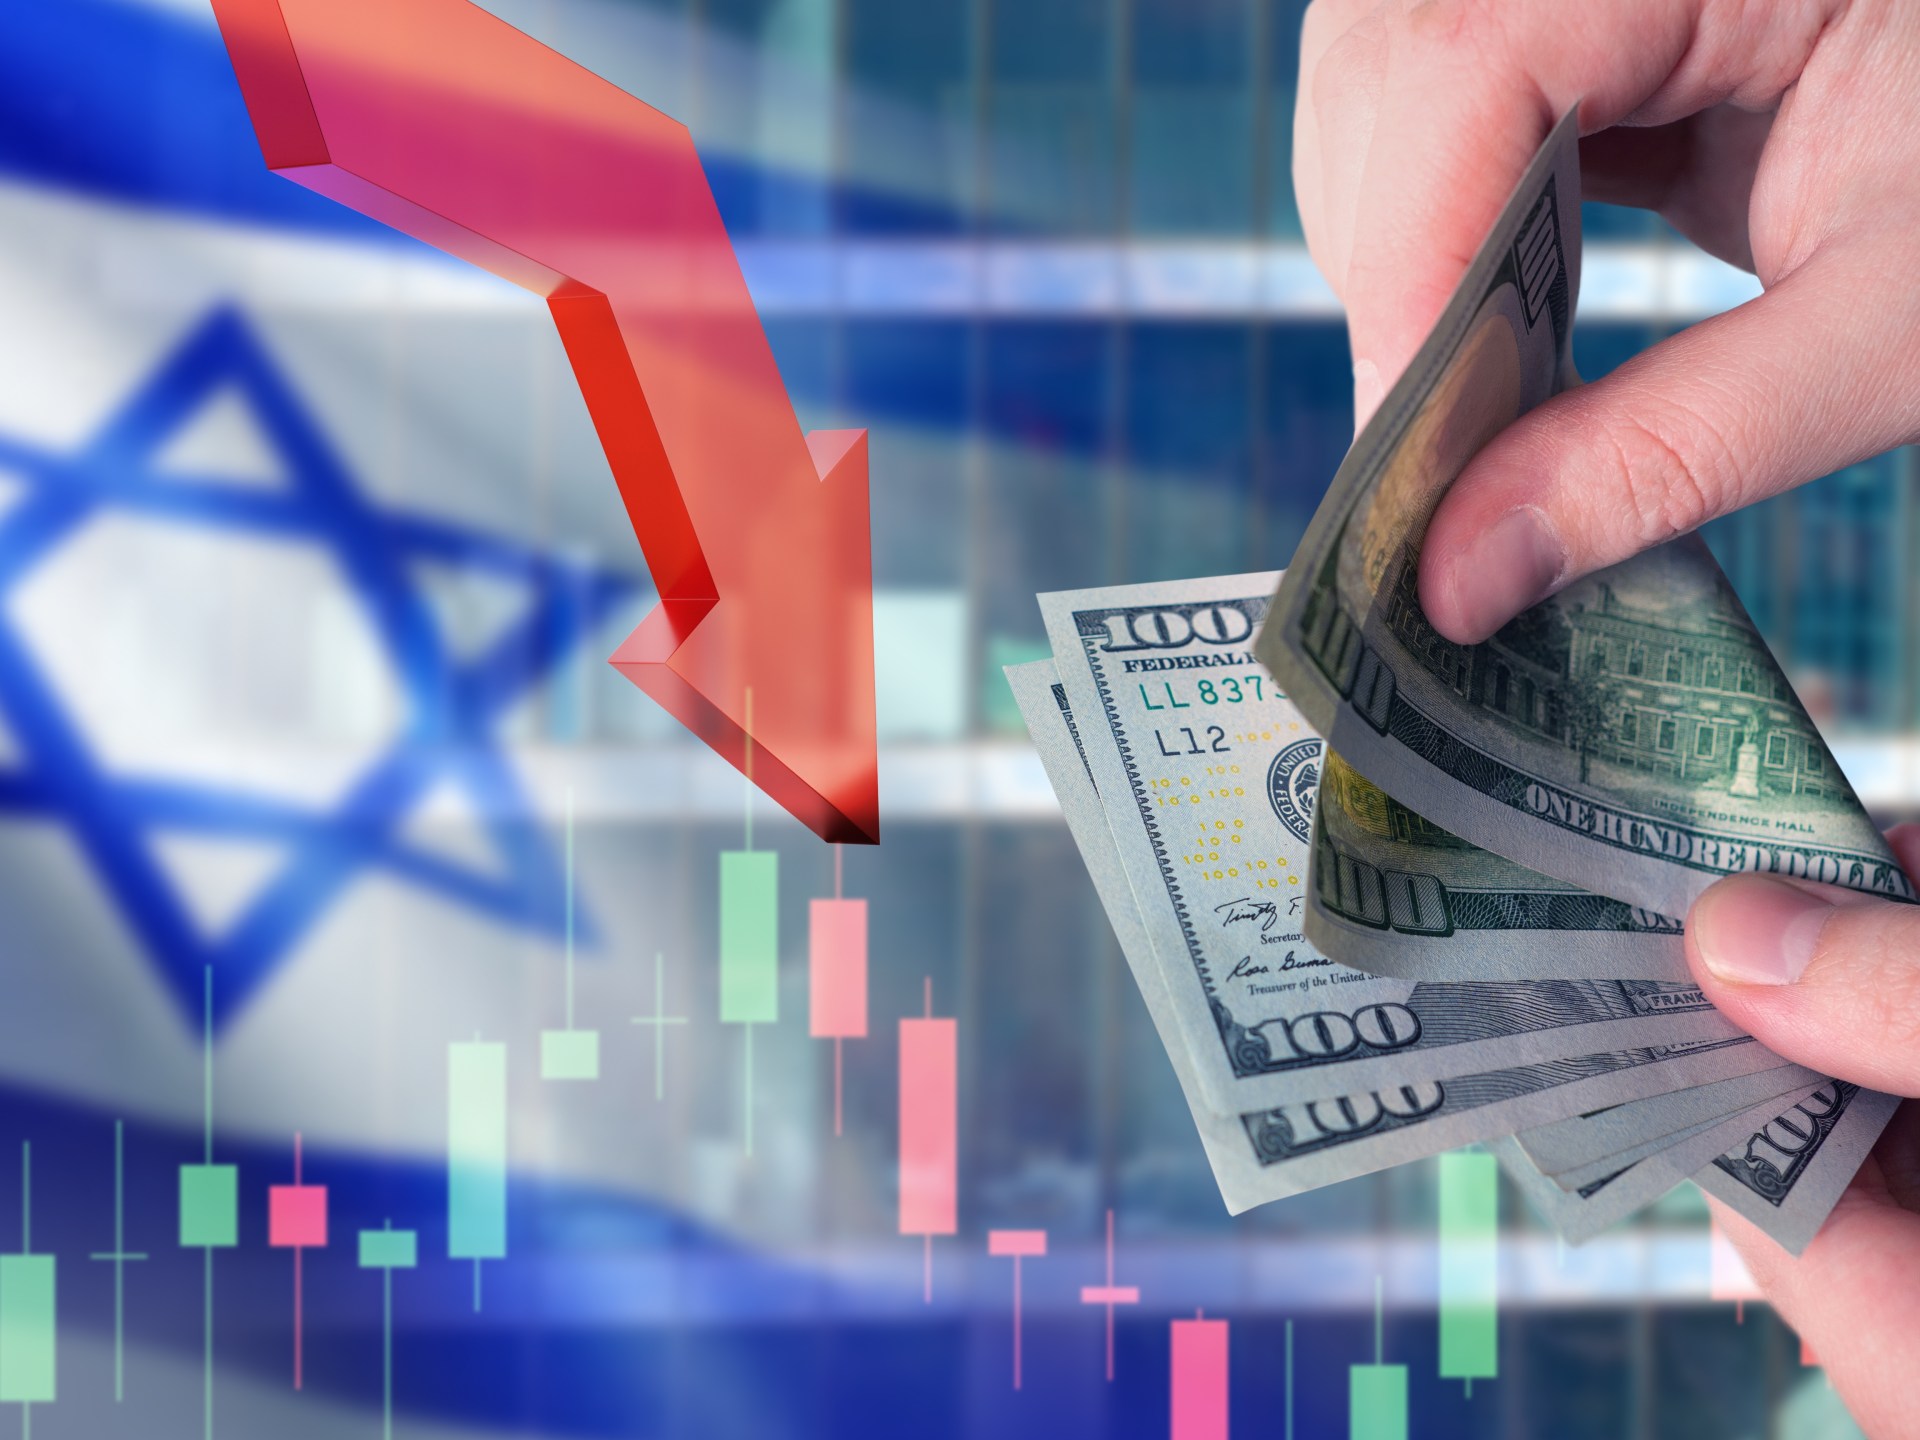 عجز موازنة إسرائيل يرتفع إلى 4 مليارات دولار في مارس الماضي | اقتصاد – البوكس نيوز